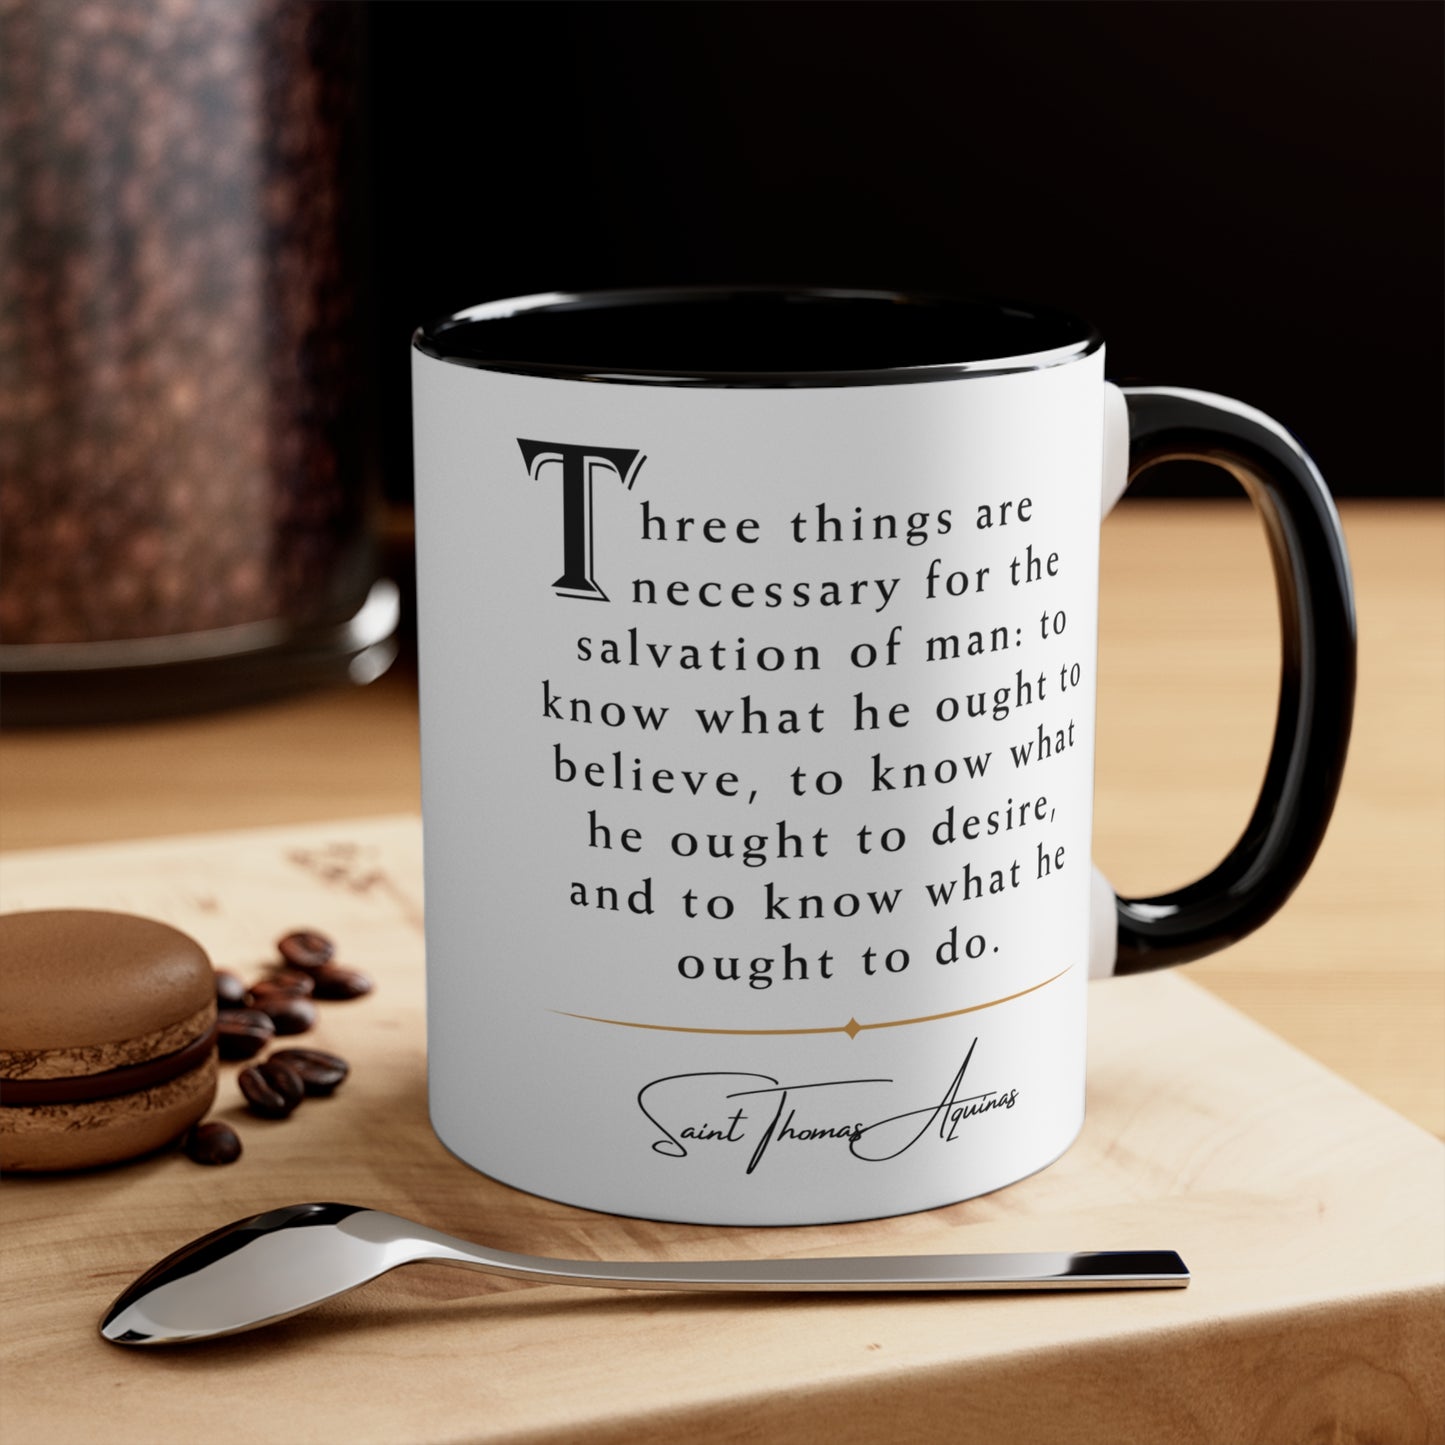 St. Thomas Aquinas Coffee Mug